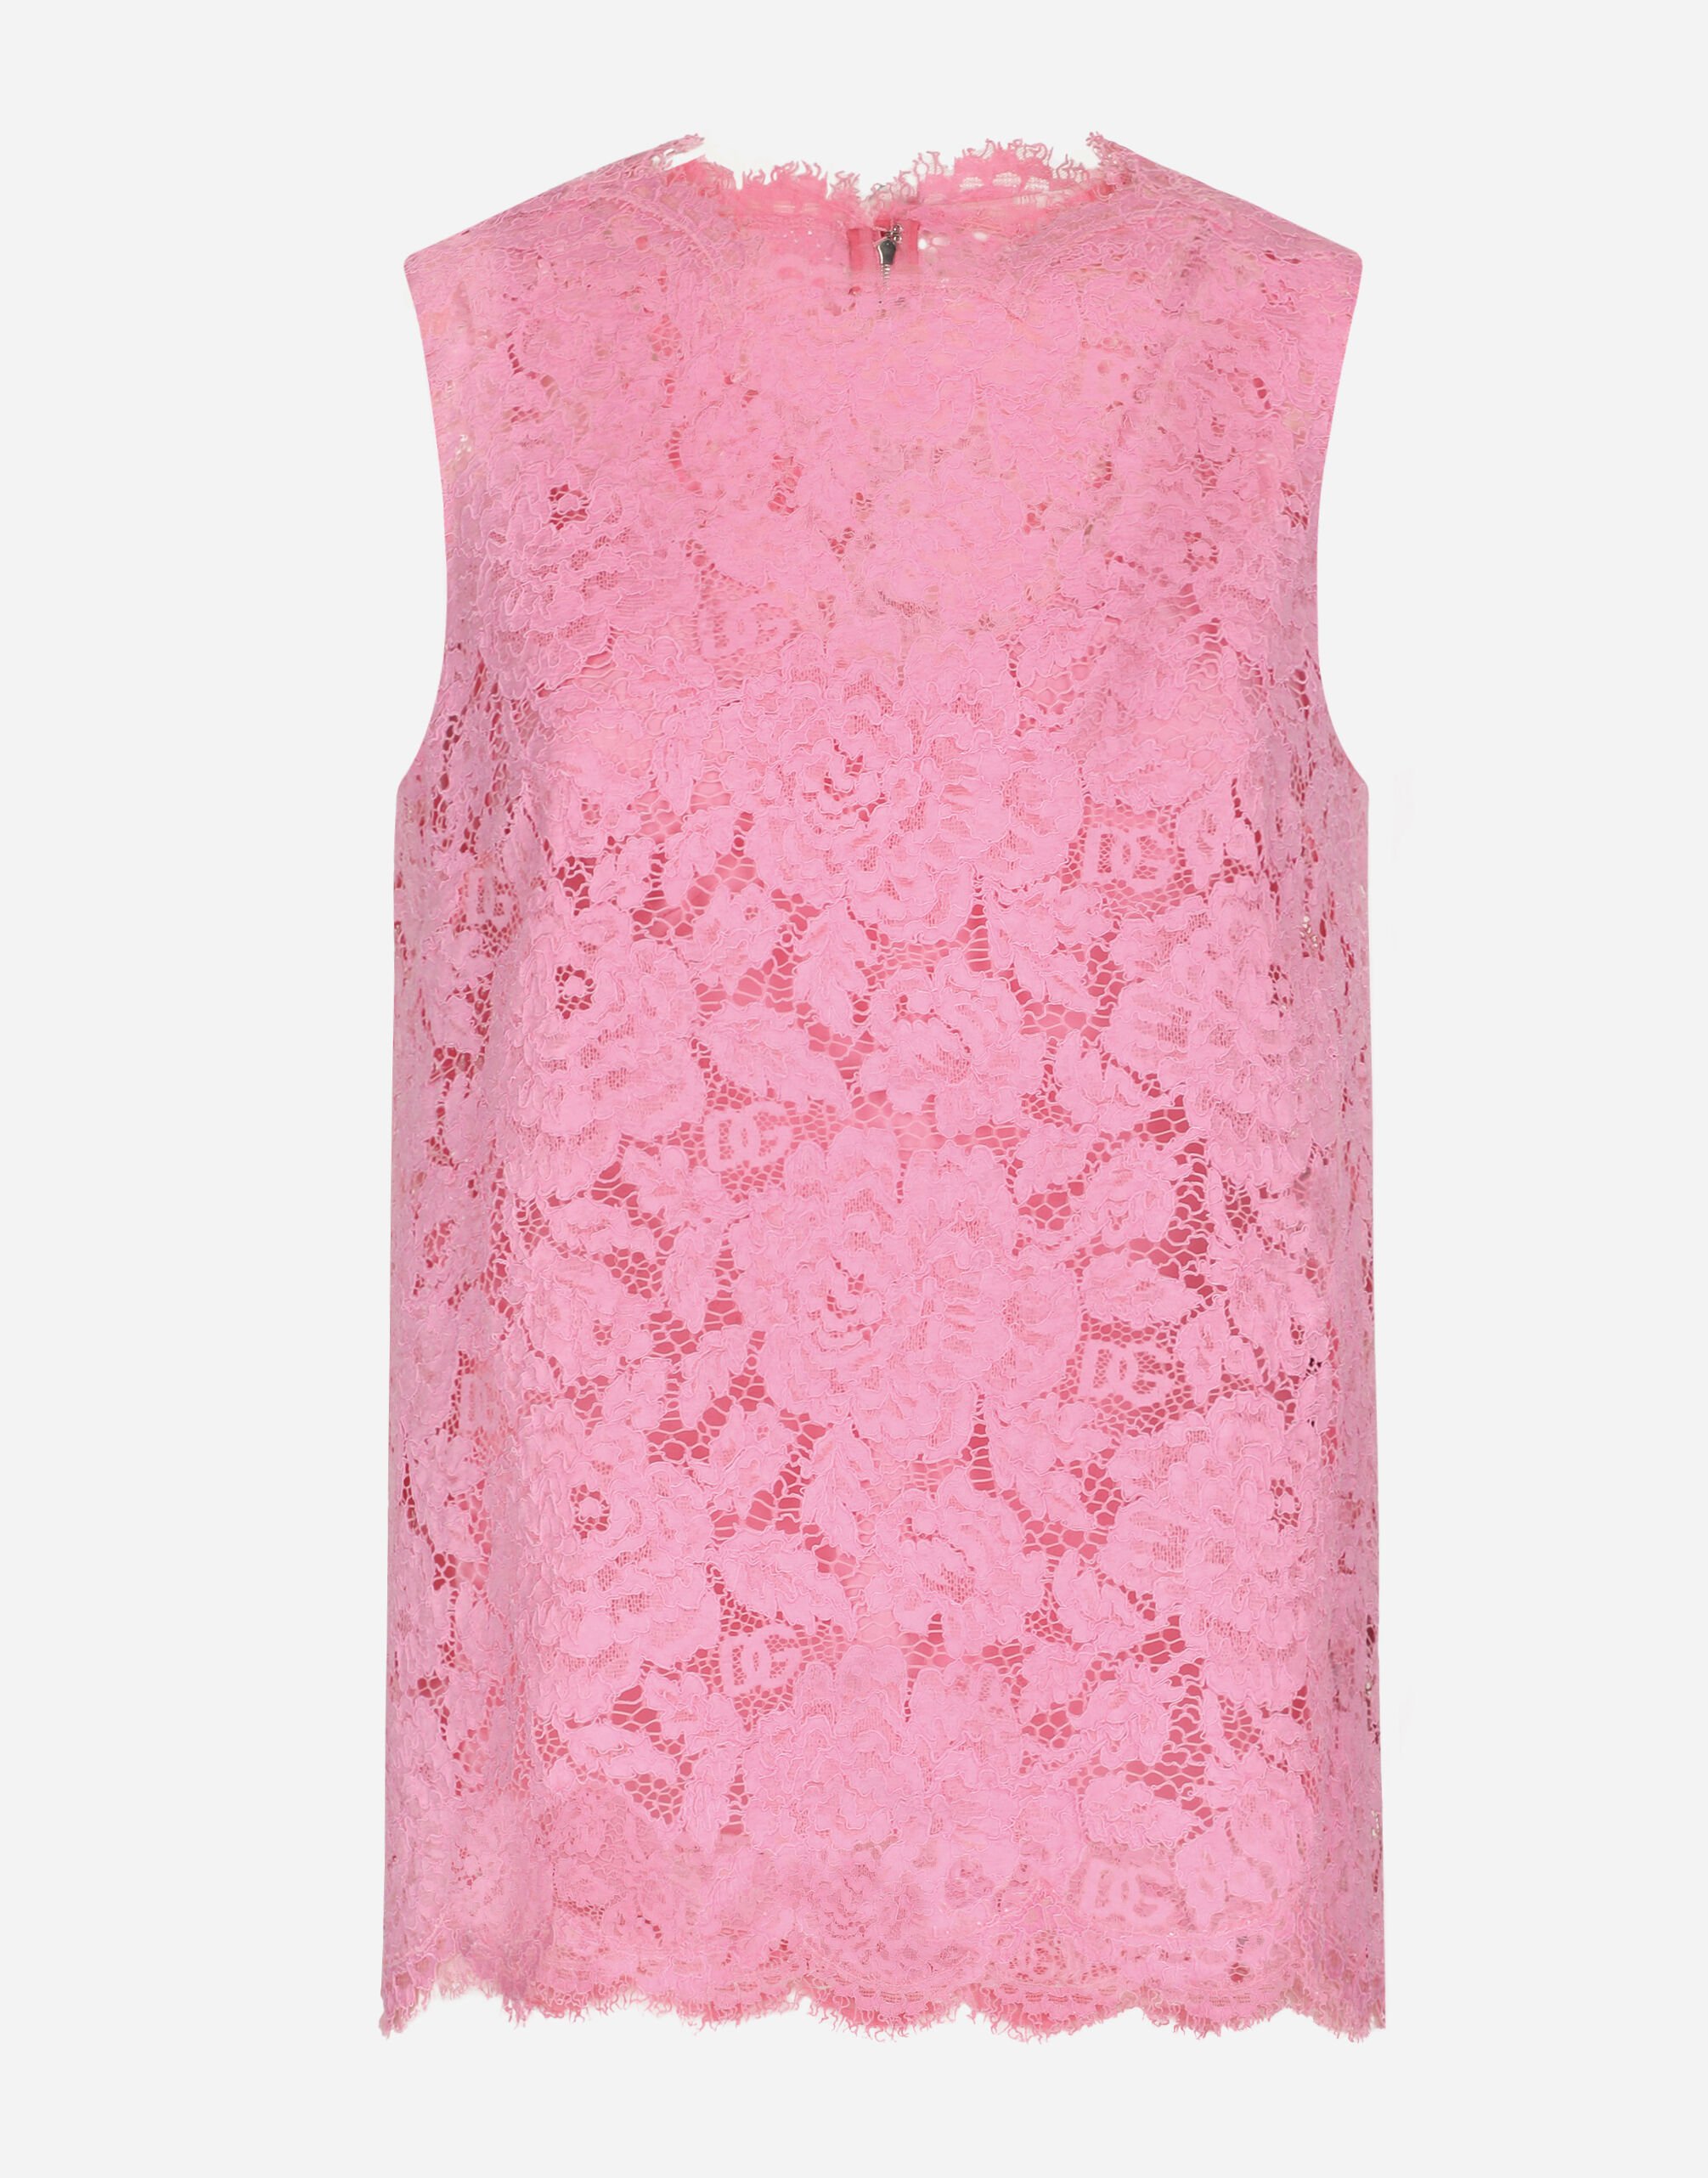 Dolce & Gabbana Branded stretch lace top Pink F6DIHTFURAG